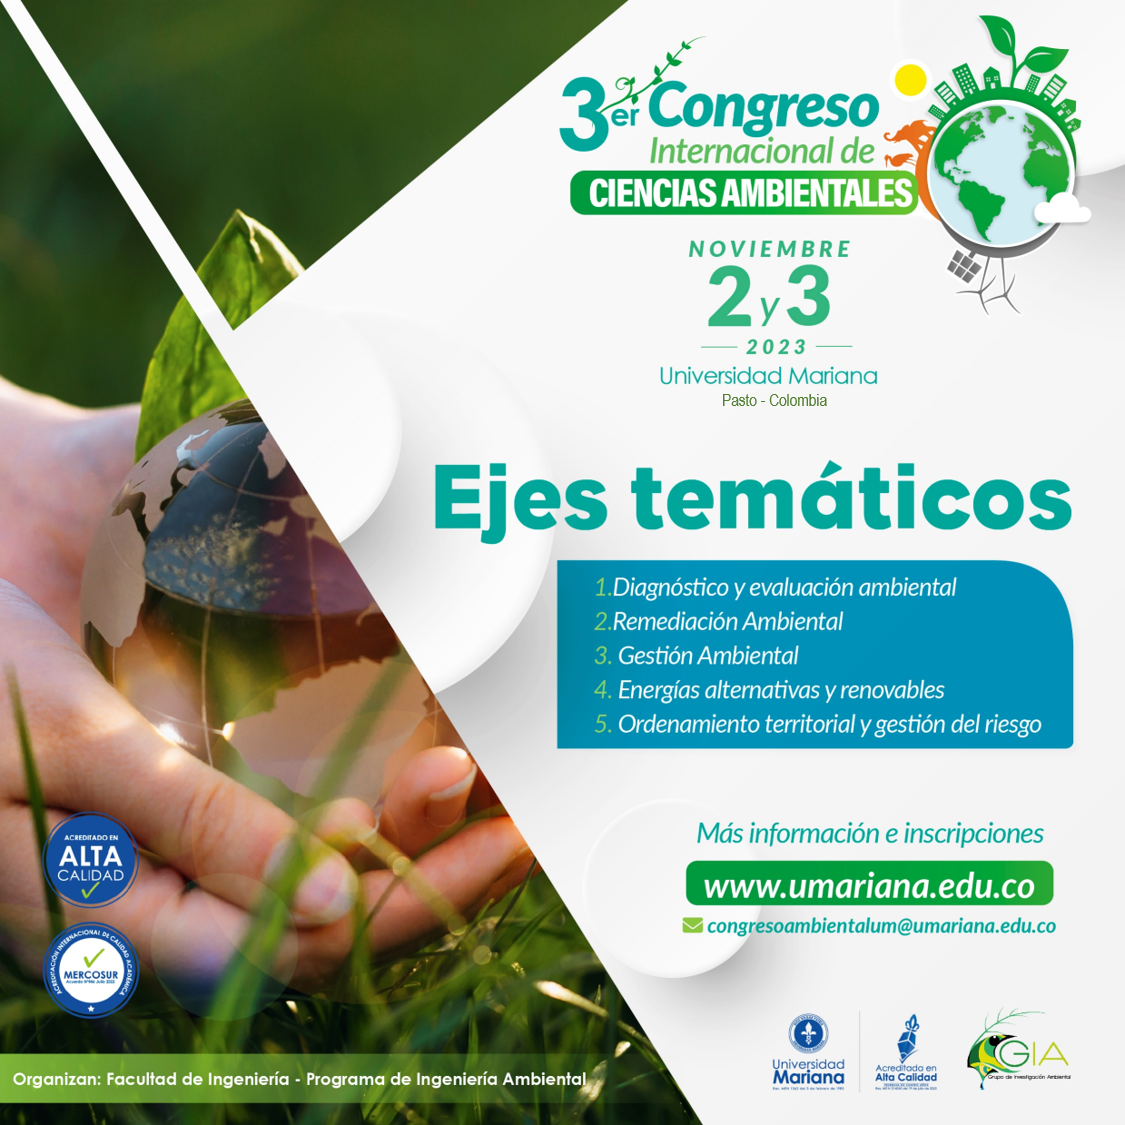 3er Congreso Internacional de Ciencias Ambientales